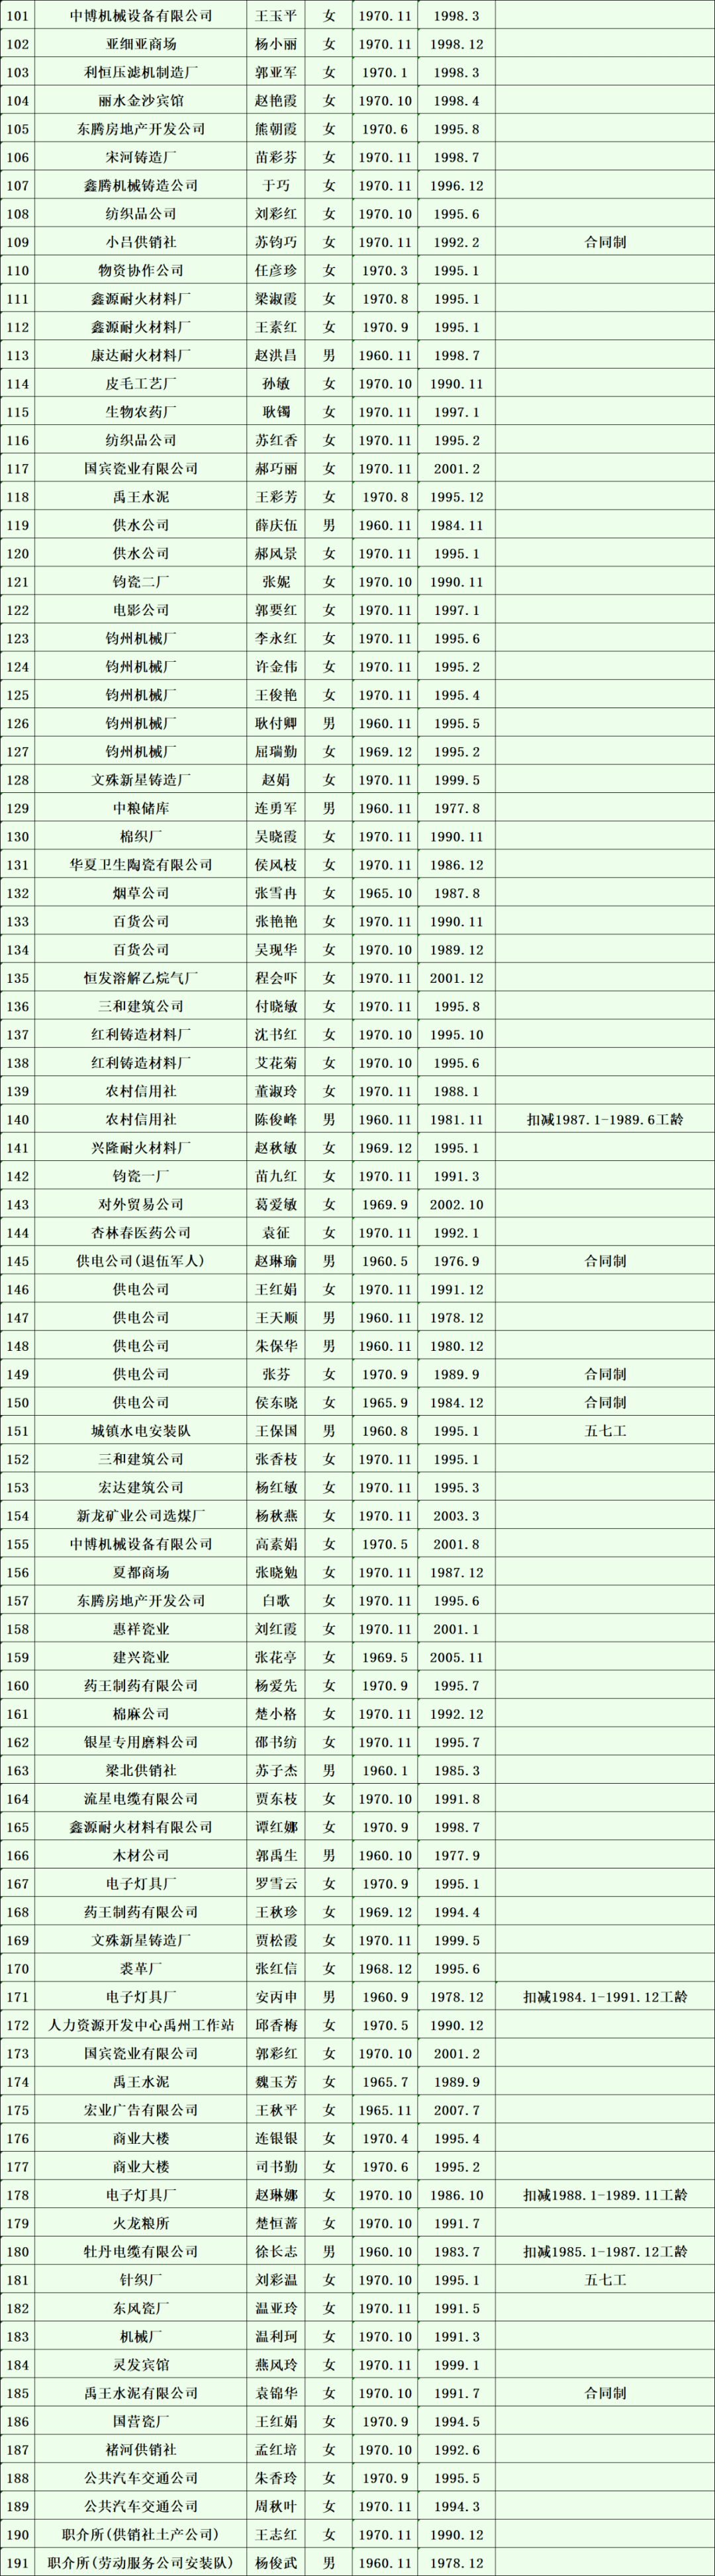 2020年11月禹州市企业退休人员名单公示